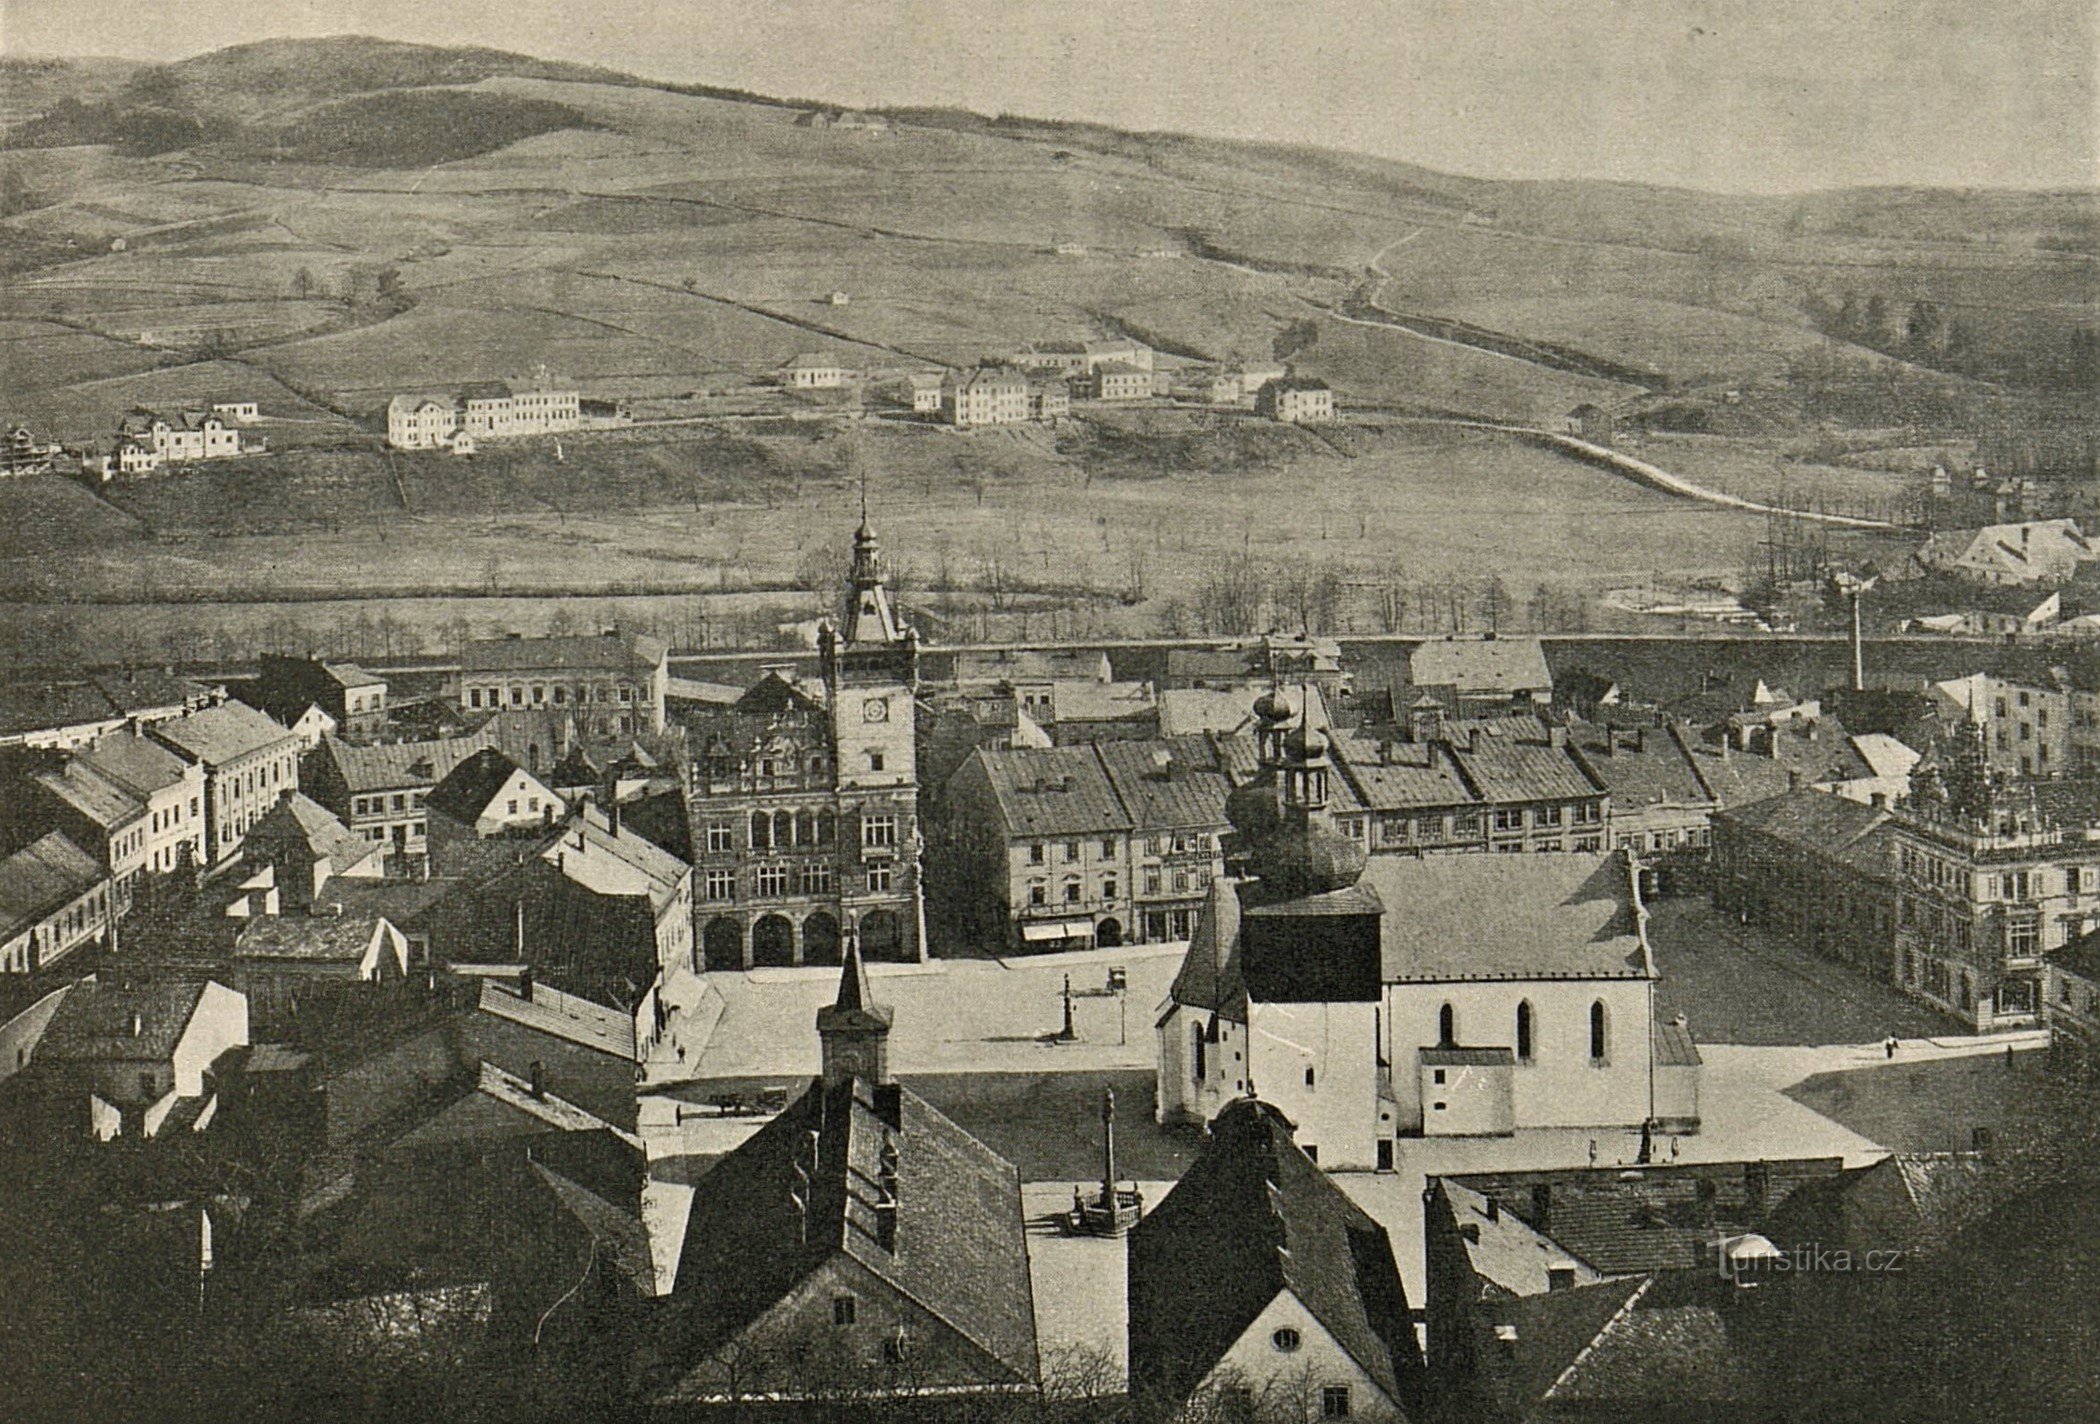 Άποψη του Náchod από το κάστρο από τις αρχές του 20ου αιώνα (πιθανότατα μεταξύ 1902-1904)